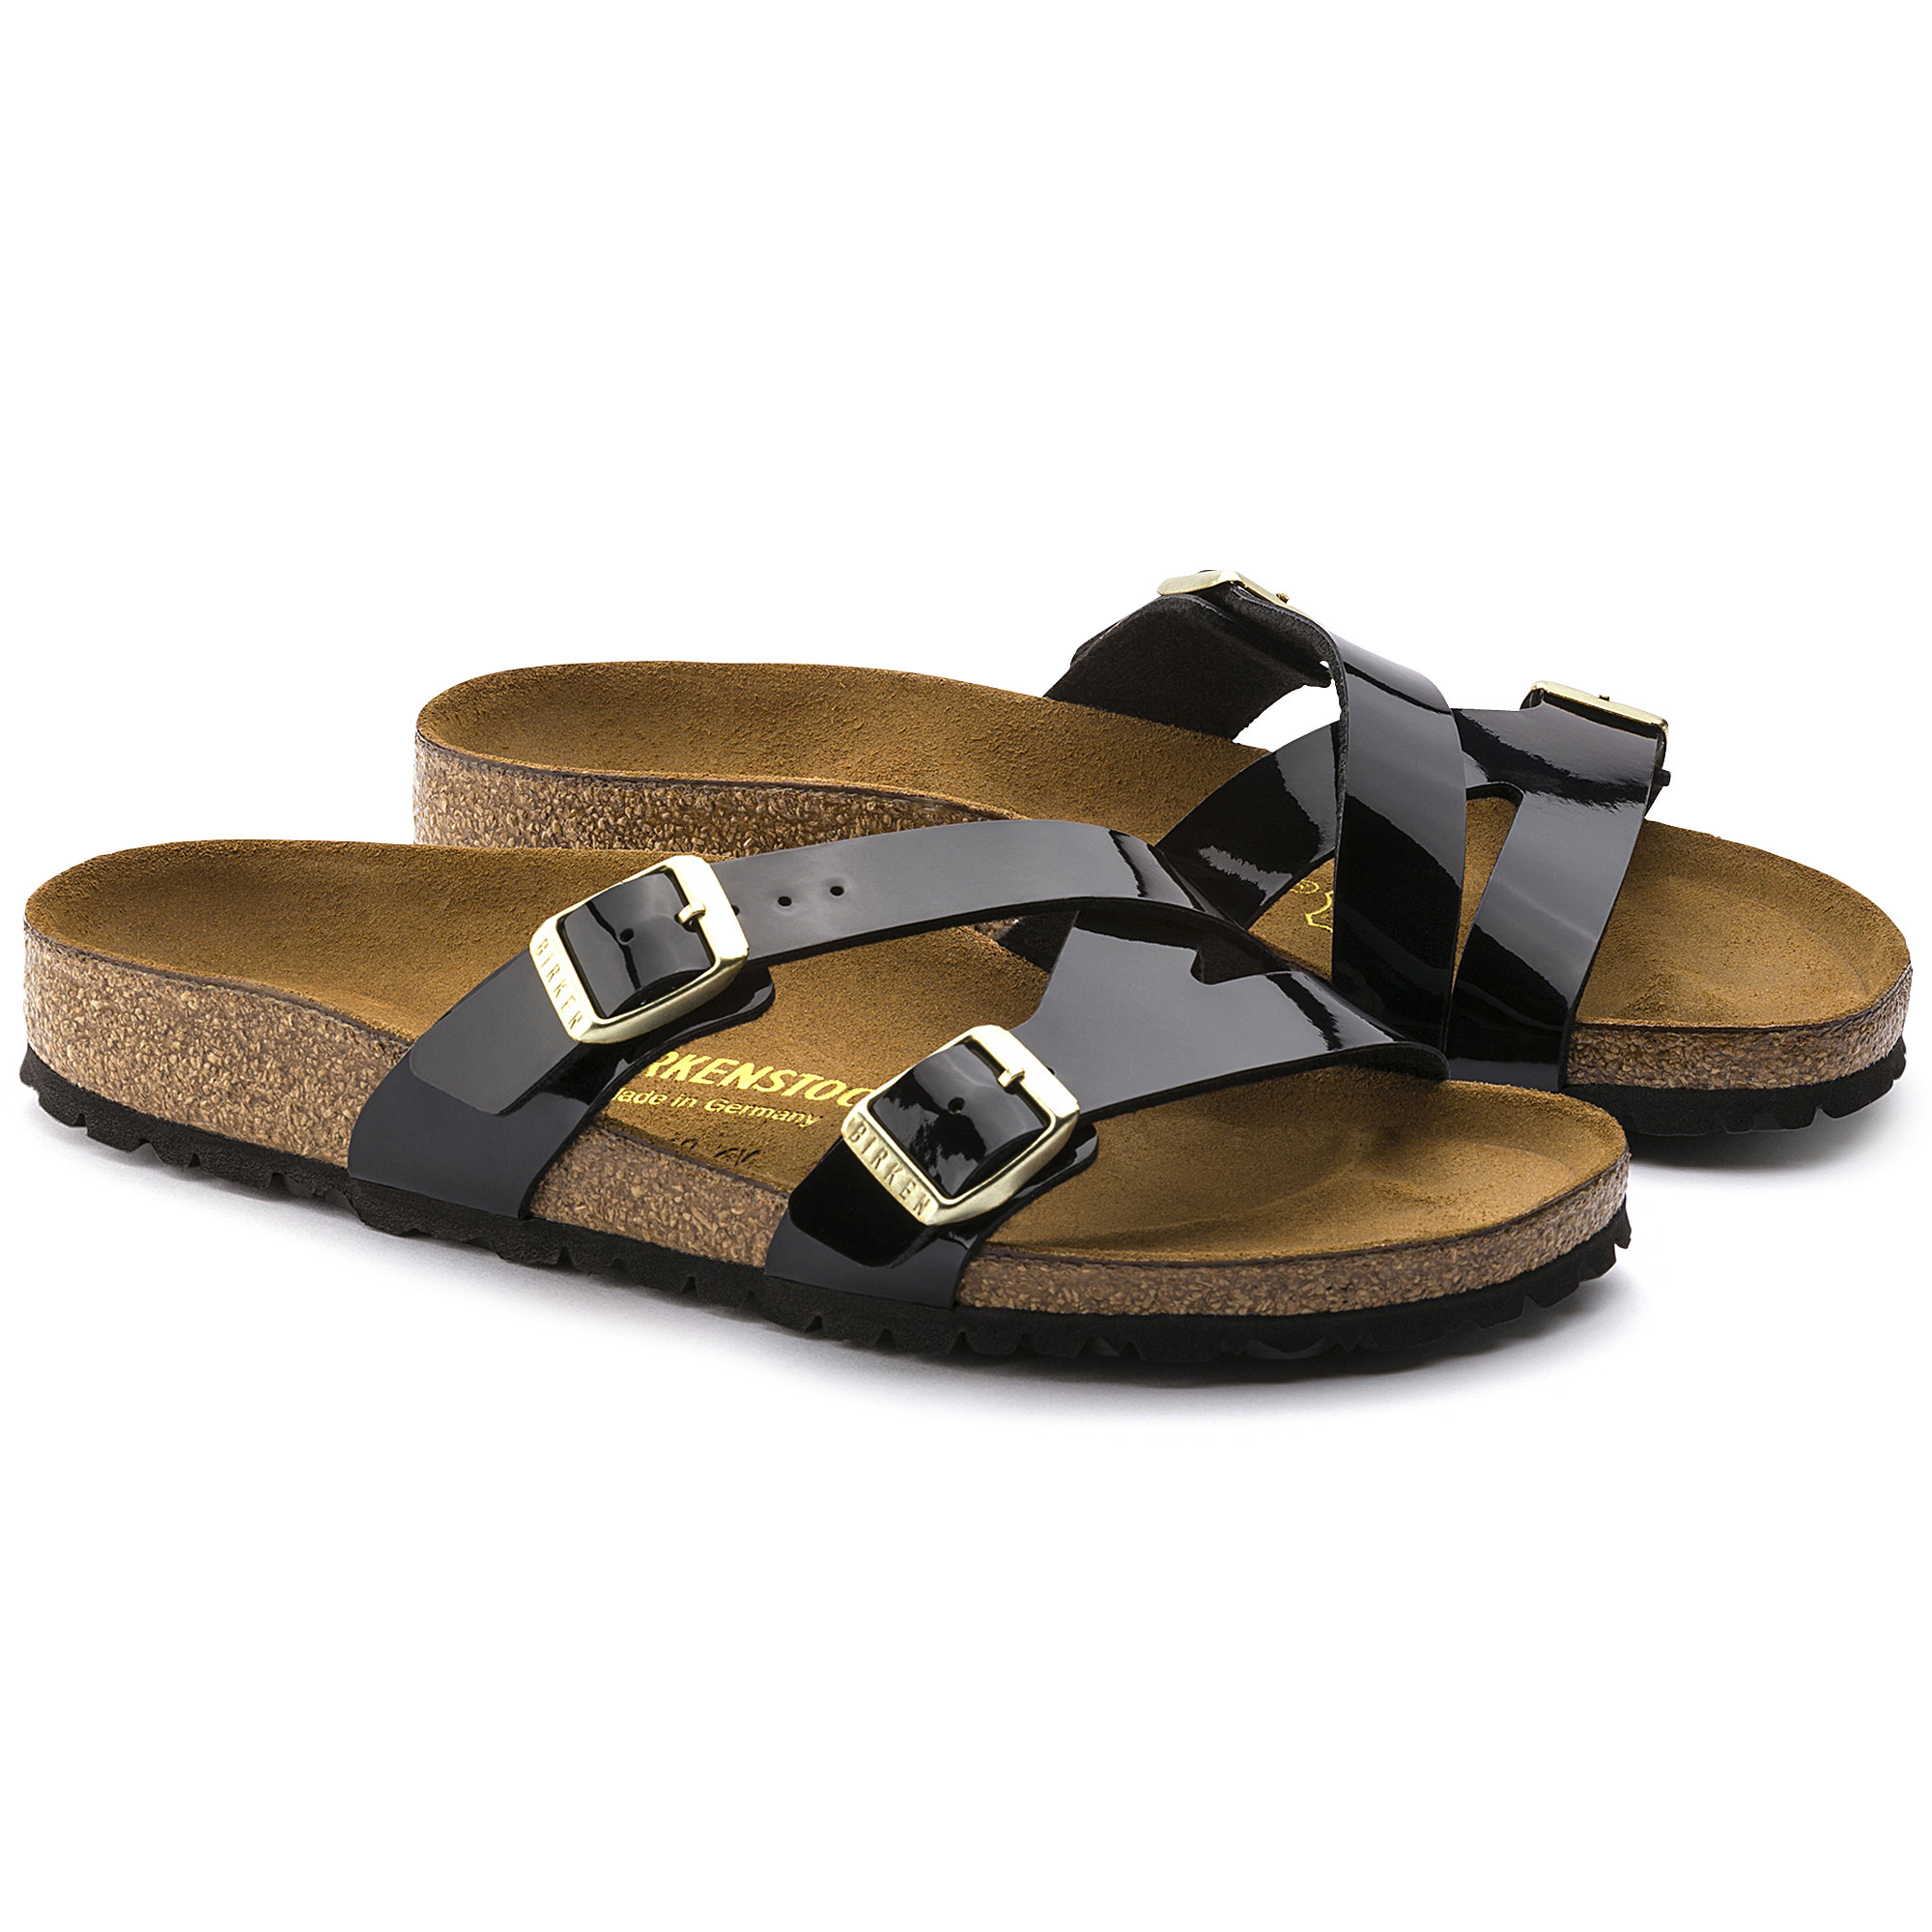 yao sandal by birkenstock